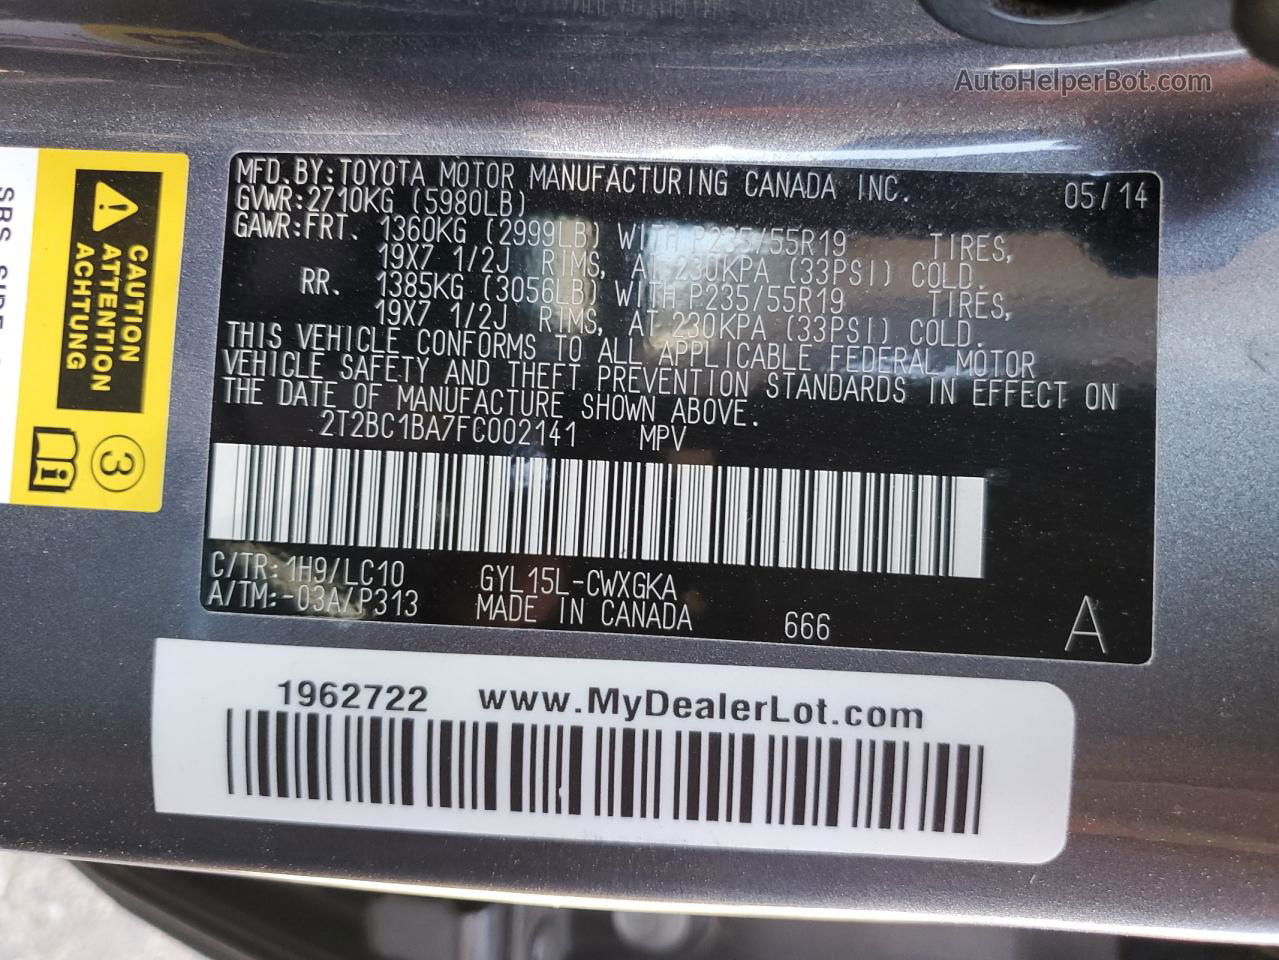 2015 Lexus Rx 450h Gray vin: 2T2BC1BA7FC002141